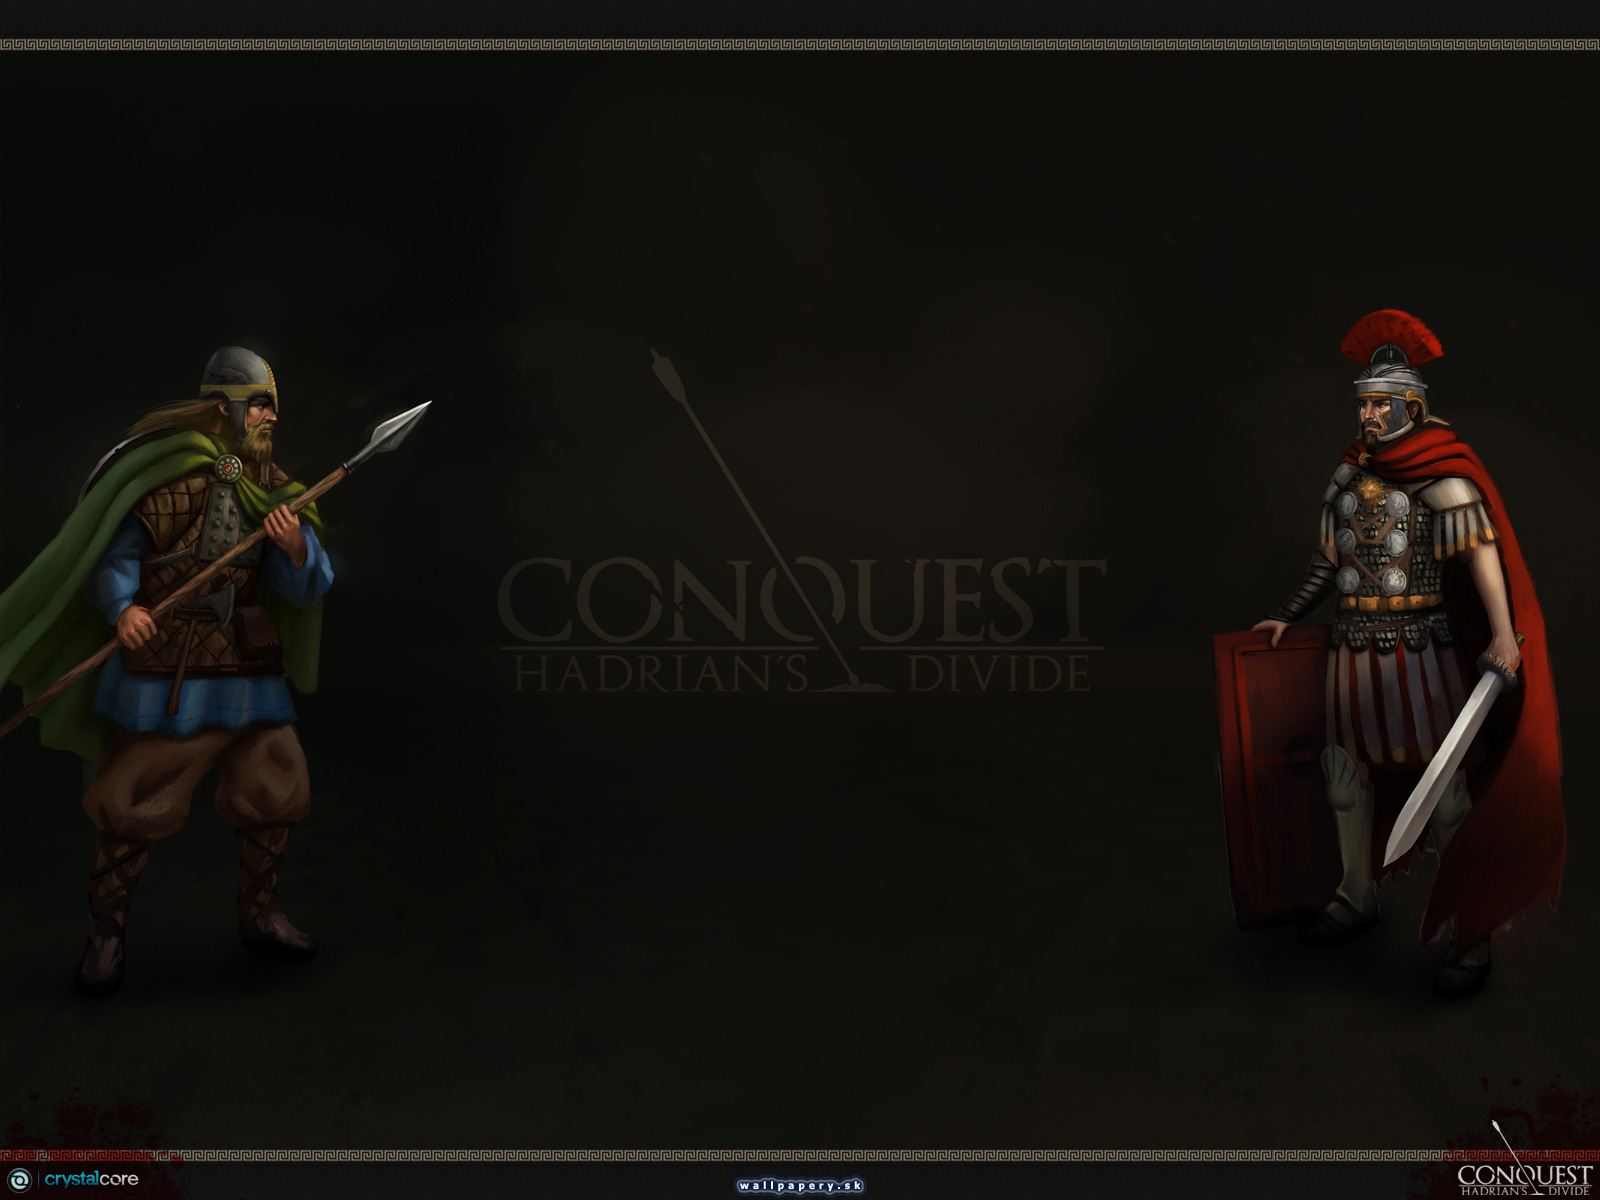 Conquest: Hadrians Divide - wallpaper 2